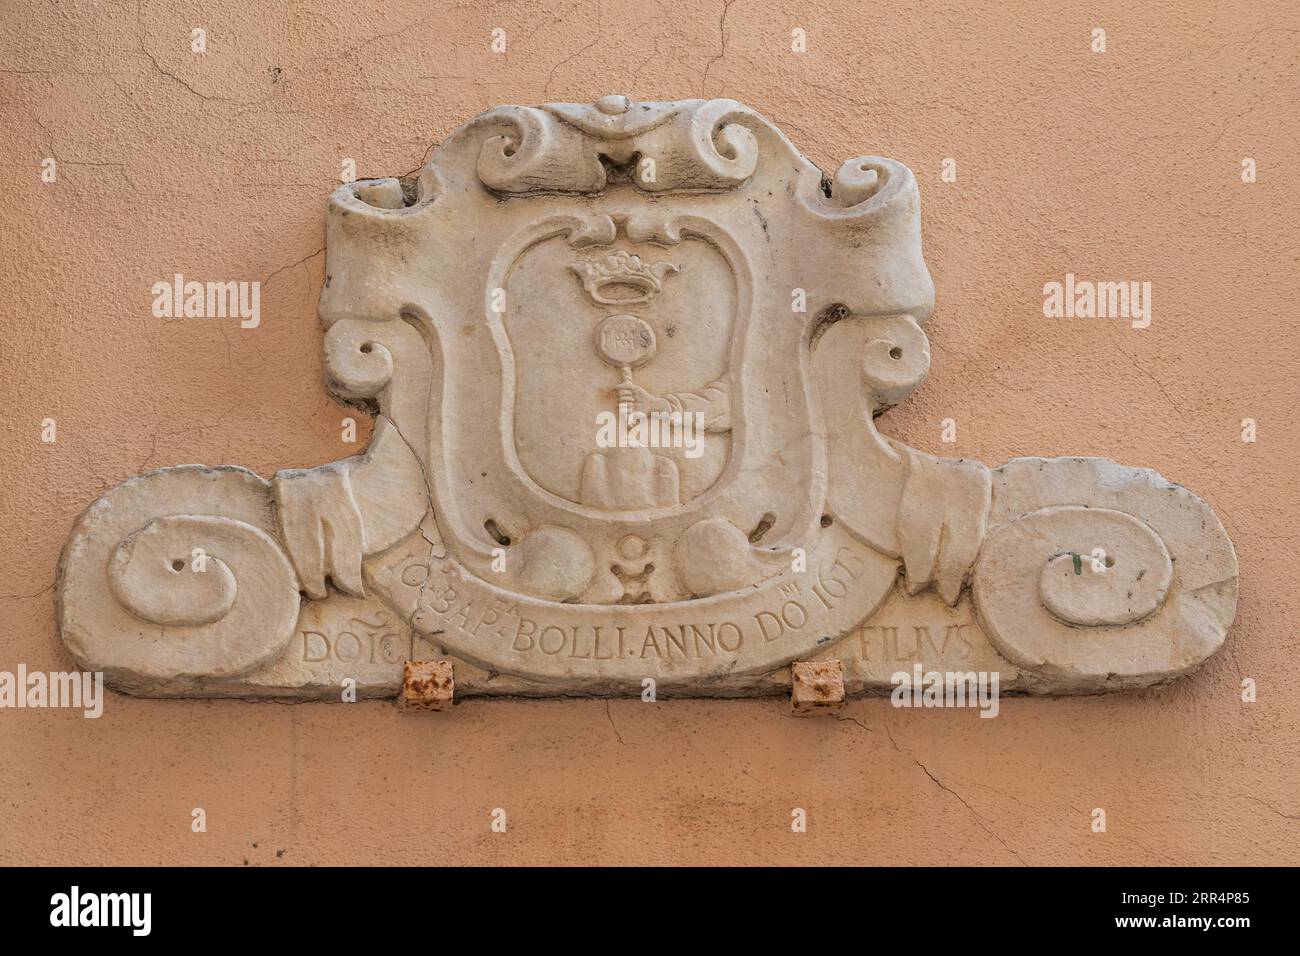 Marmorplakette mit Wappen und lateinischer Inschrift aus dem Jahr 1673 an einer Mauer in der Altstadt Albissola Superiore, Savona, Ligurien, Italien Stockfoto